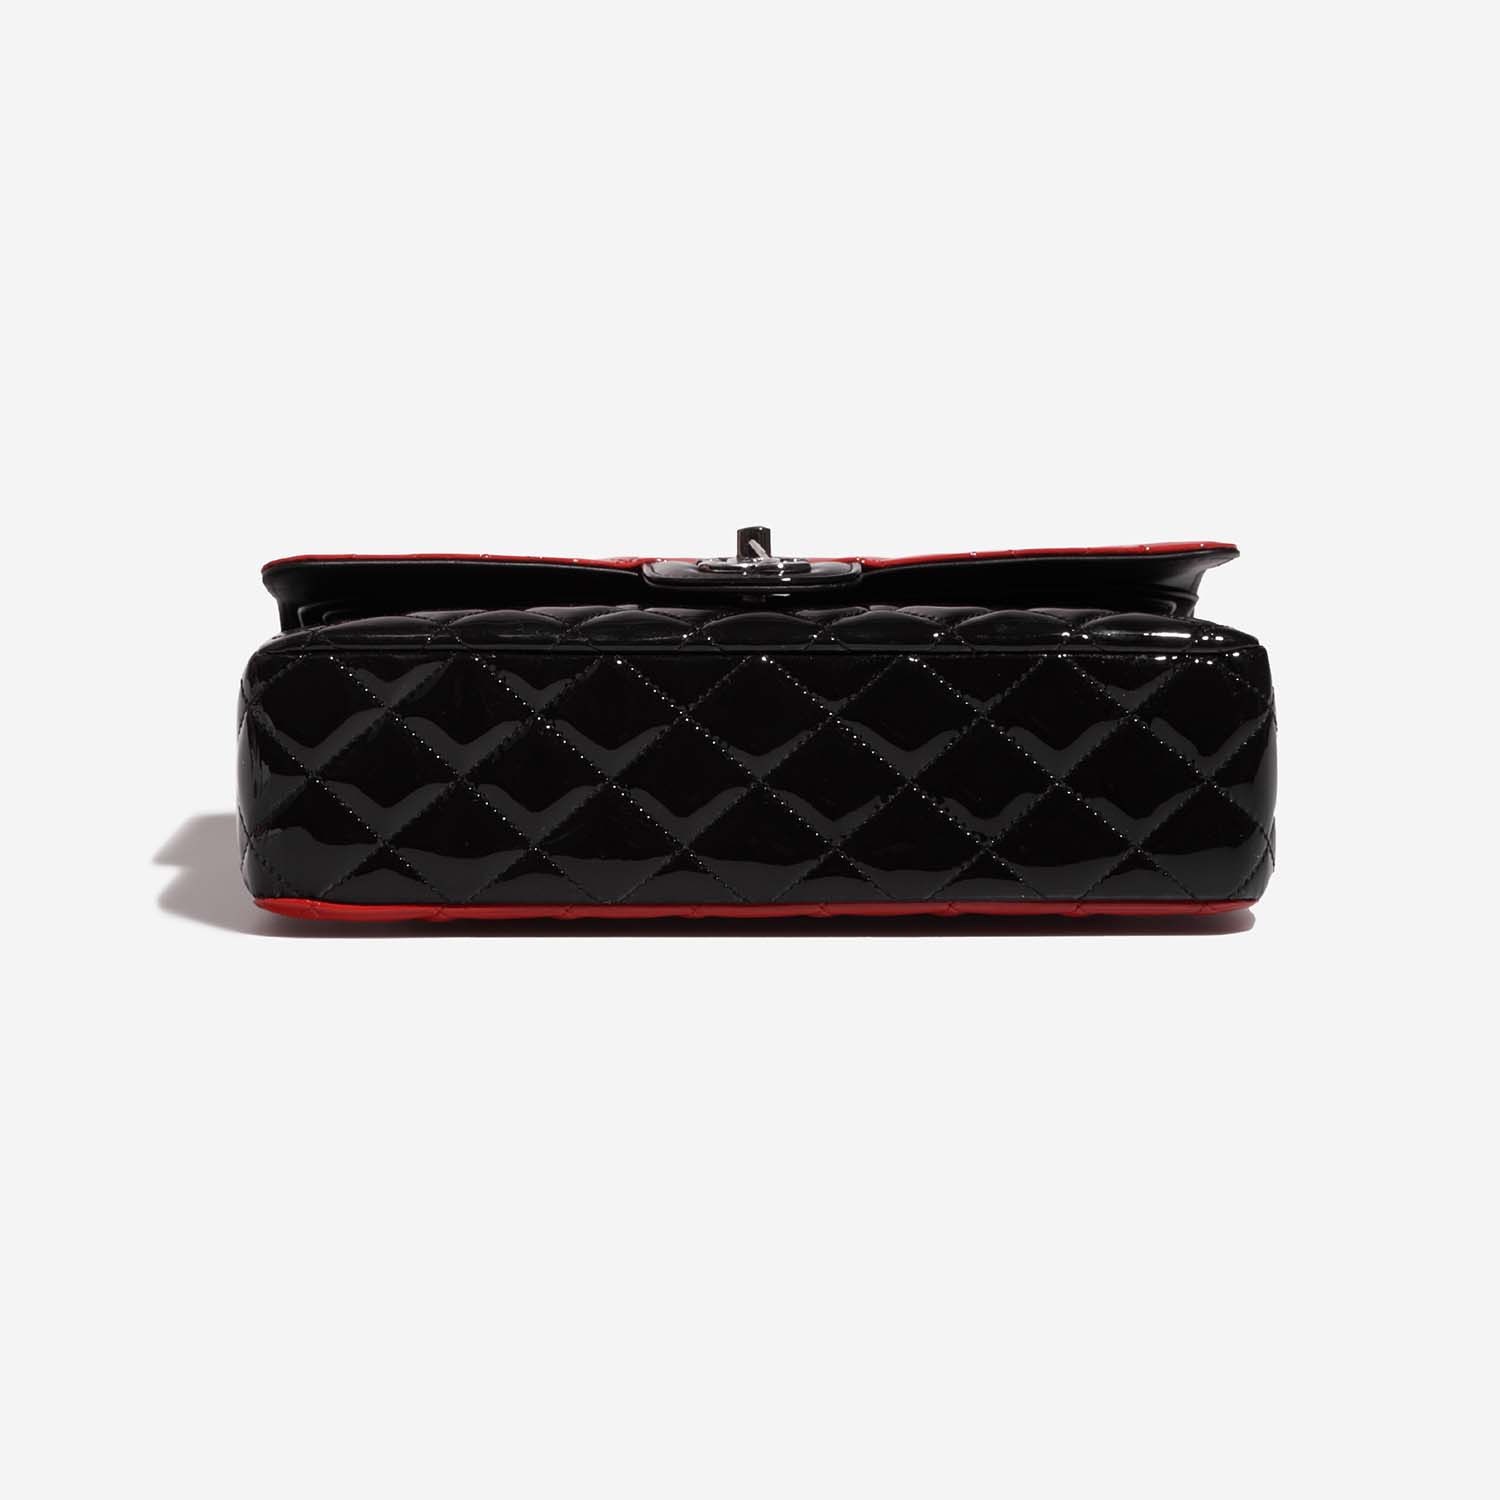 Chanel Timeless Medium Black-Red Bottom | Verkaufen Sie Ihre Designer-Tasche auf Saclab.com